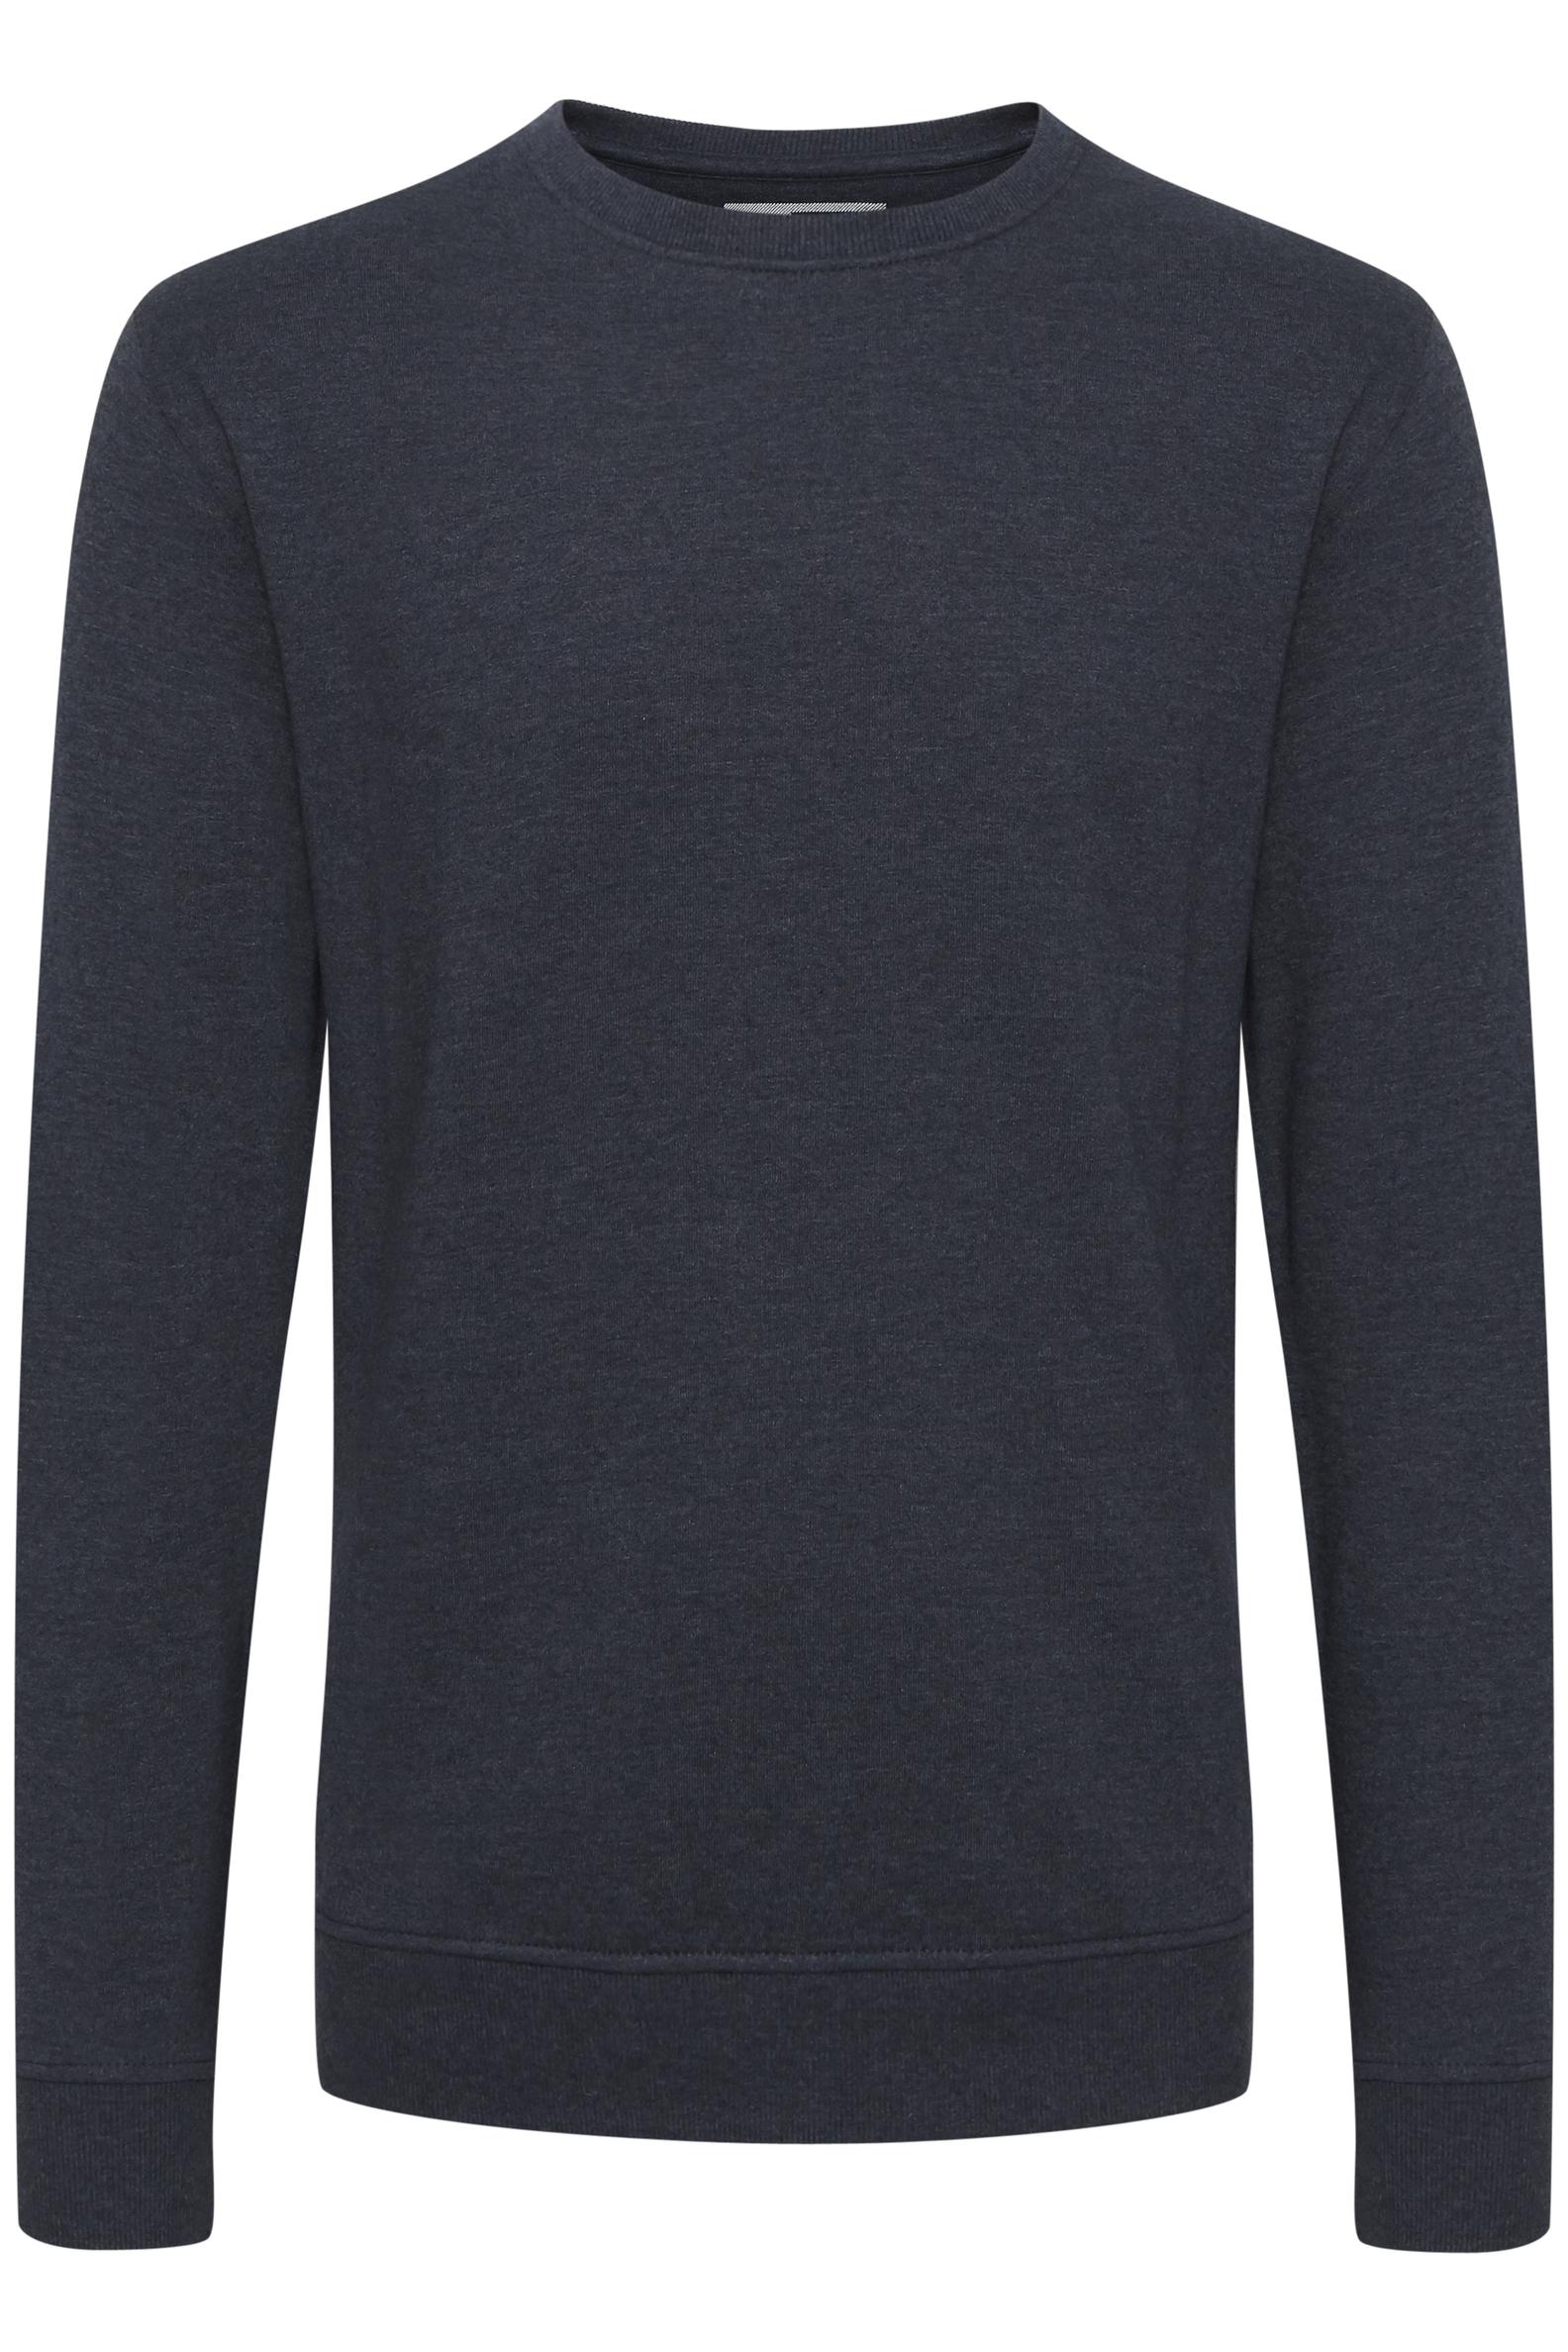 Sweatshirt på tilbud til 299,95 kr. hos Bon'A Parte